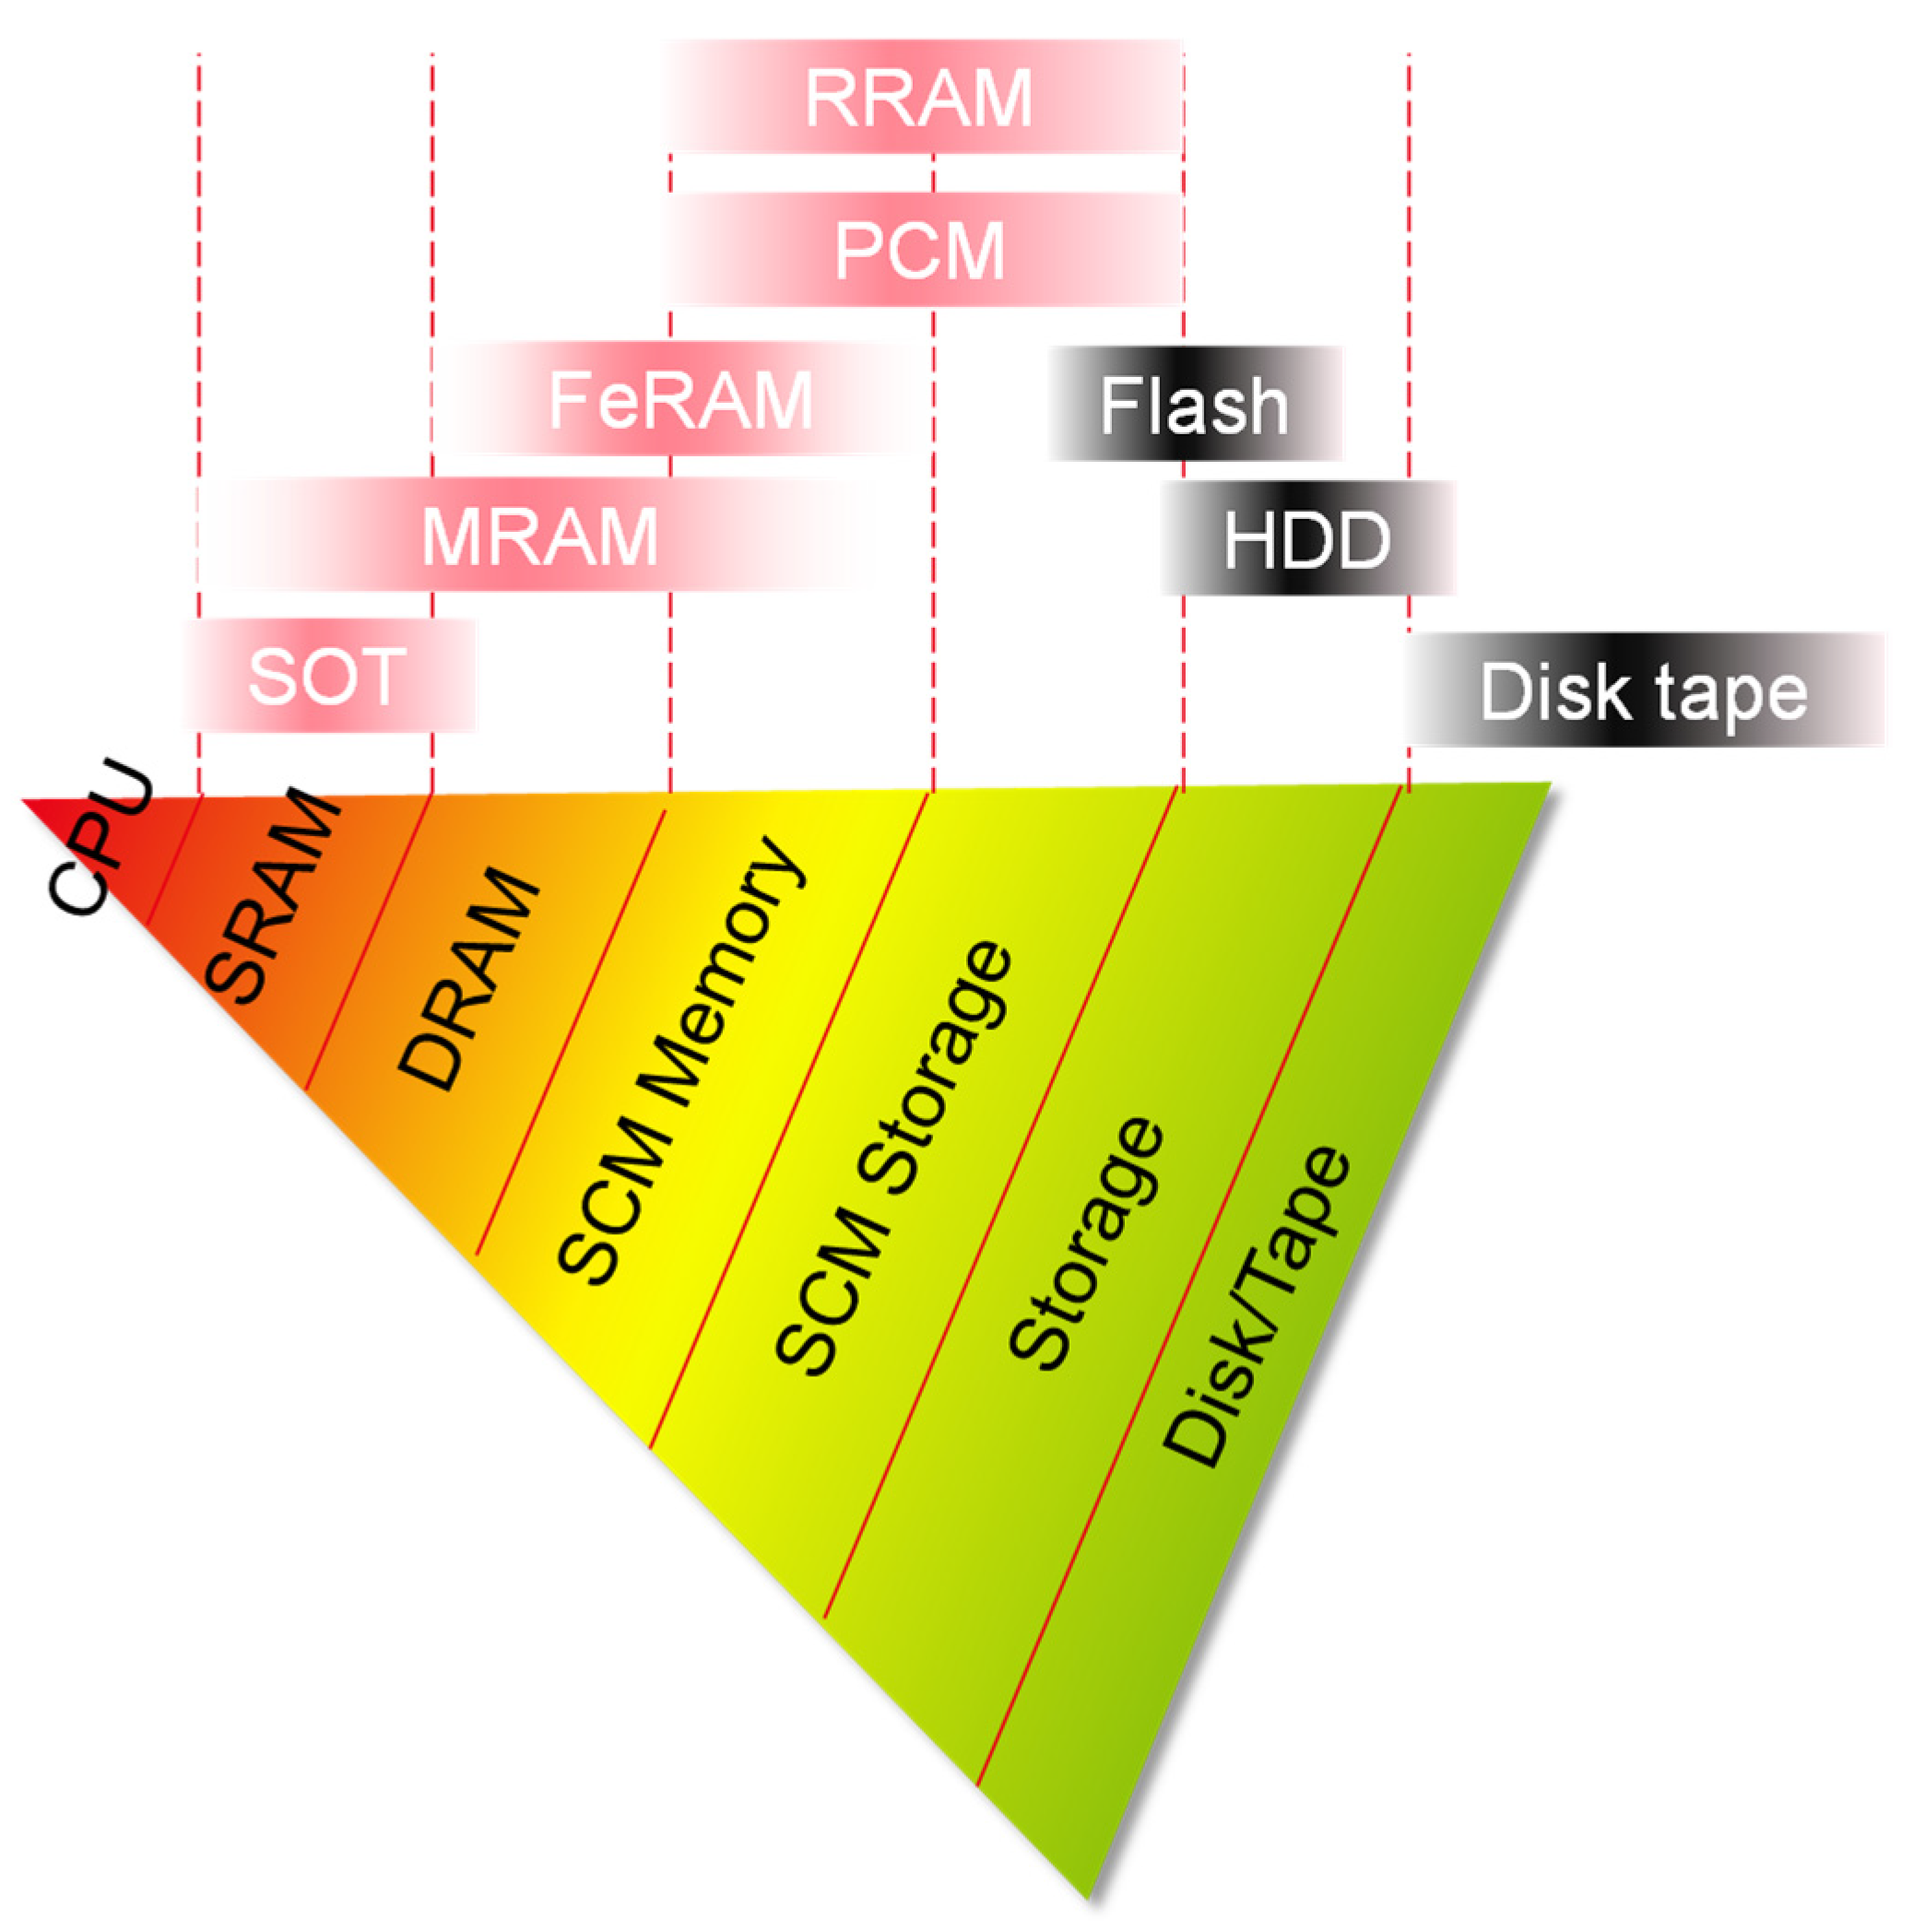 data storage hierarchy